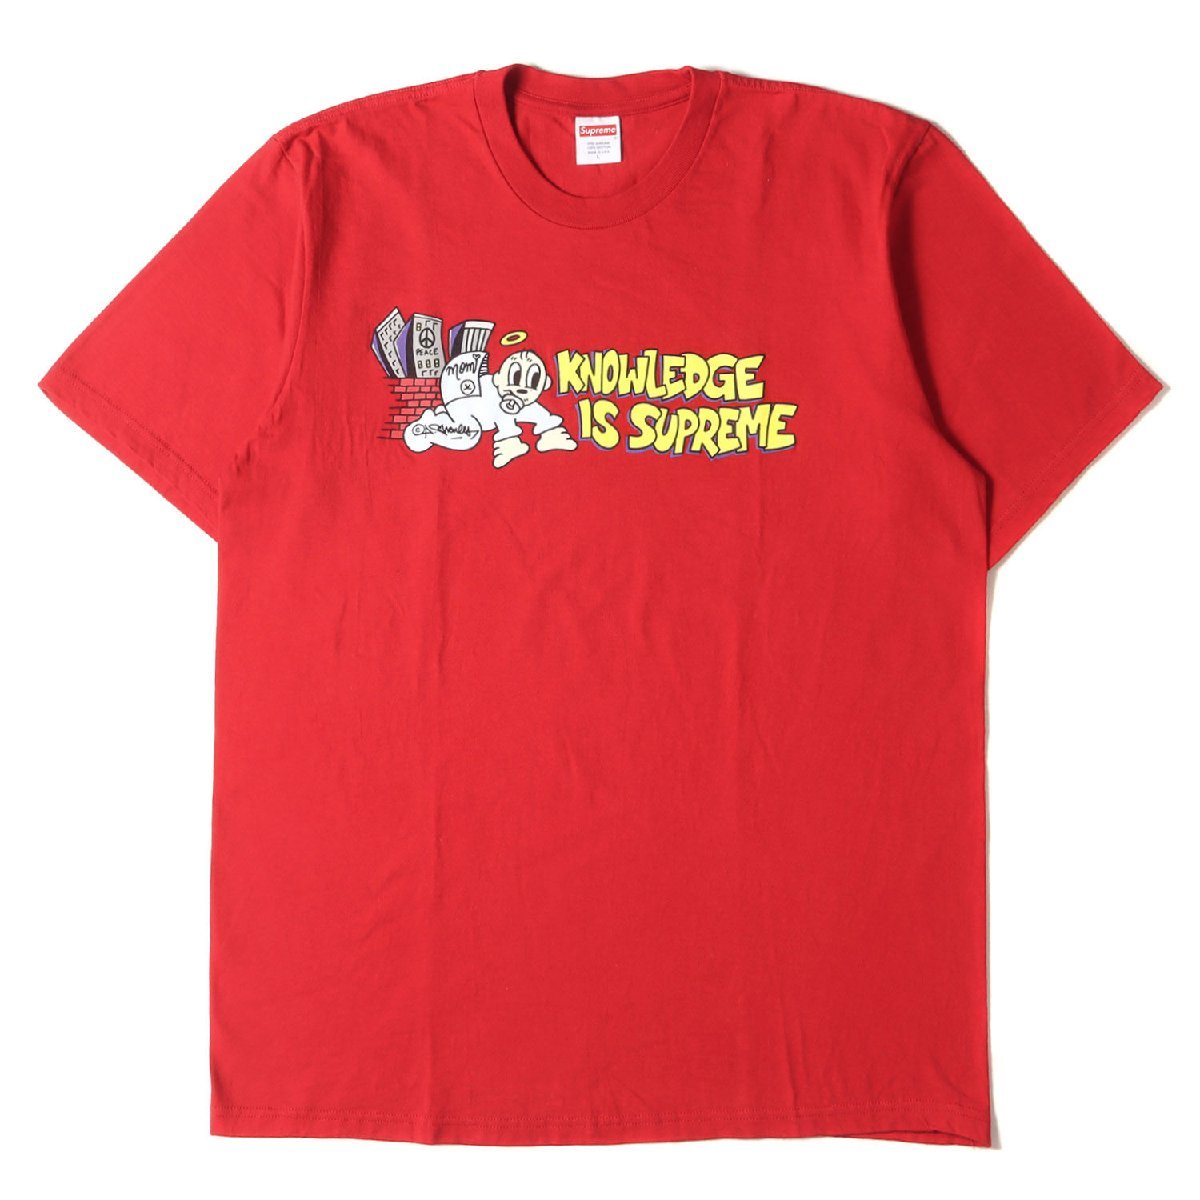 美品 Supreme シュプリーム Tシャツ サイズ:L 22SS A.Chales グラフィック クルーネック Tシャツ Knowledge Tee レッド 赤 トップス